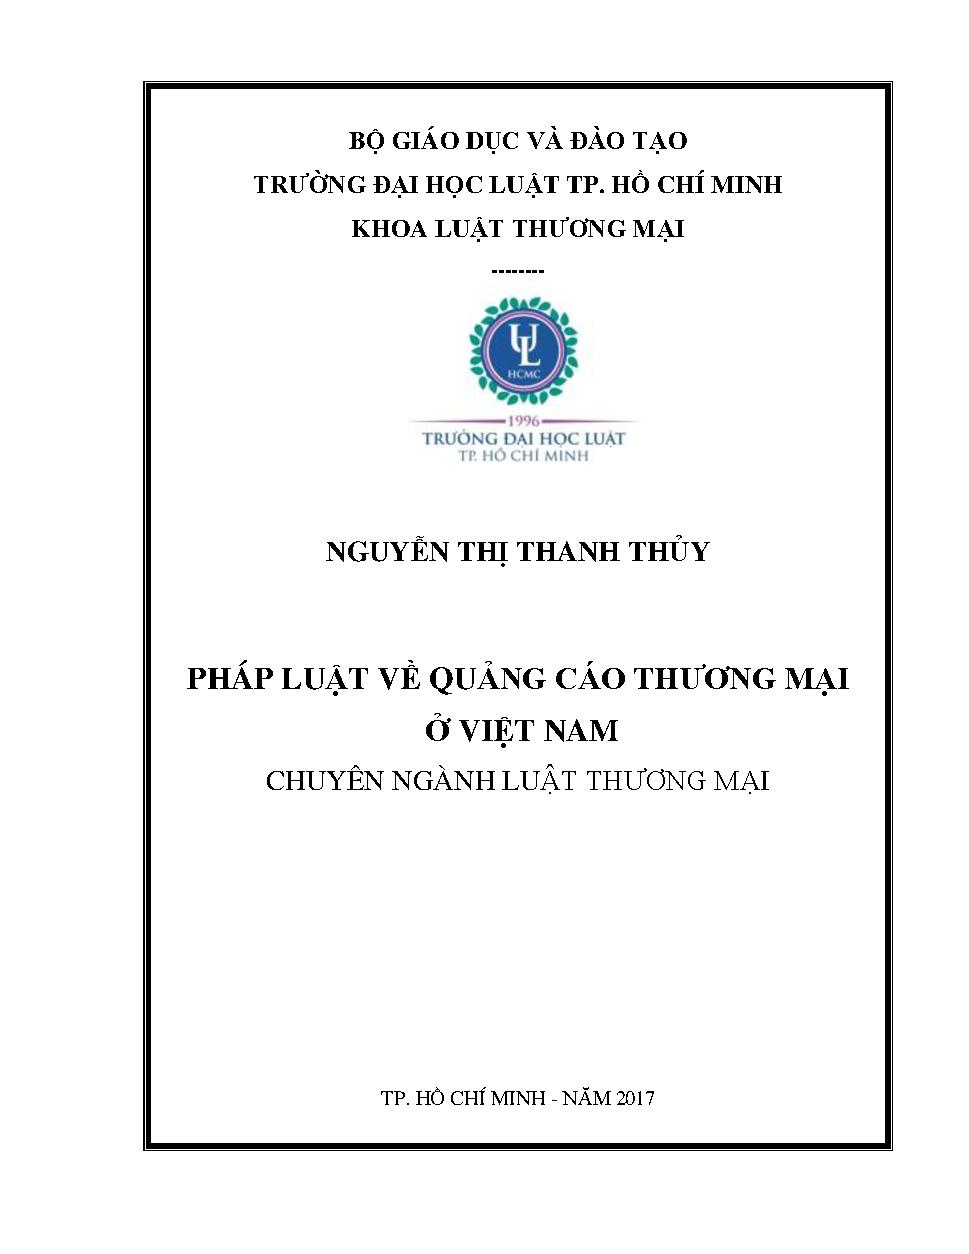 Pháp luật về quảng cáo thương mại ở Việt Nam